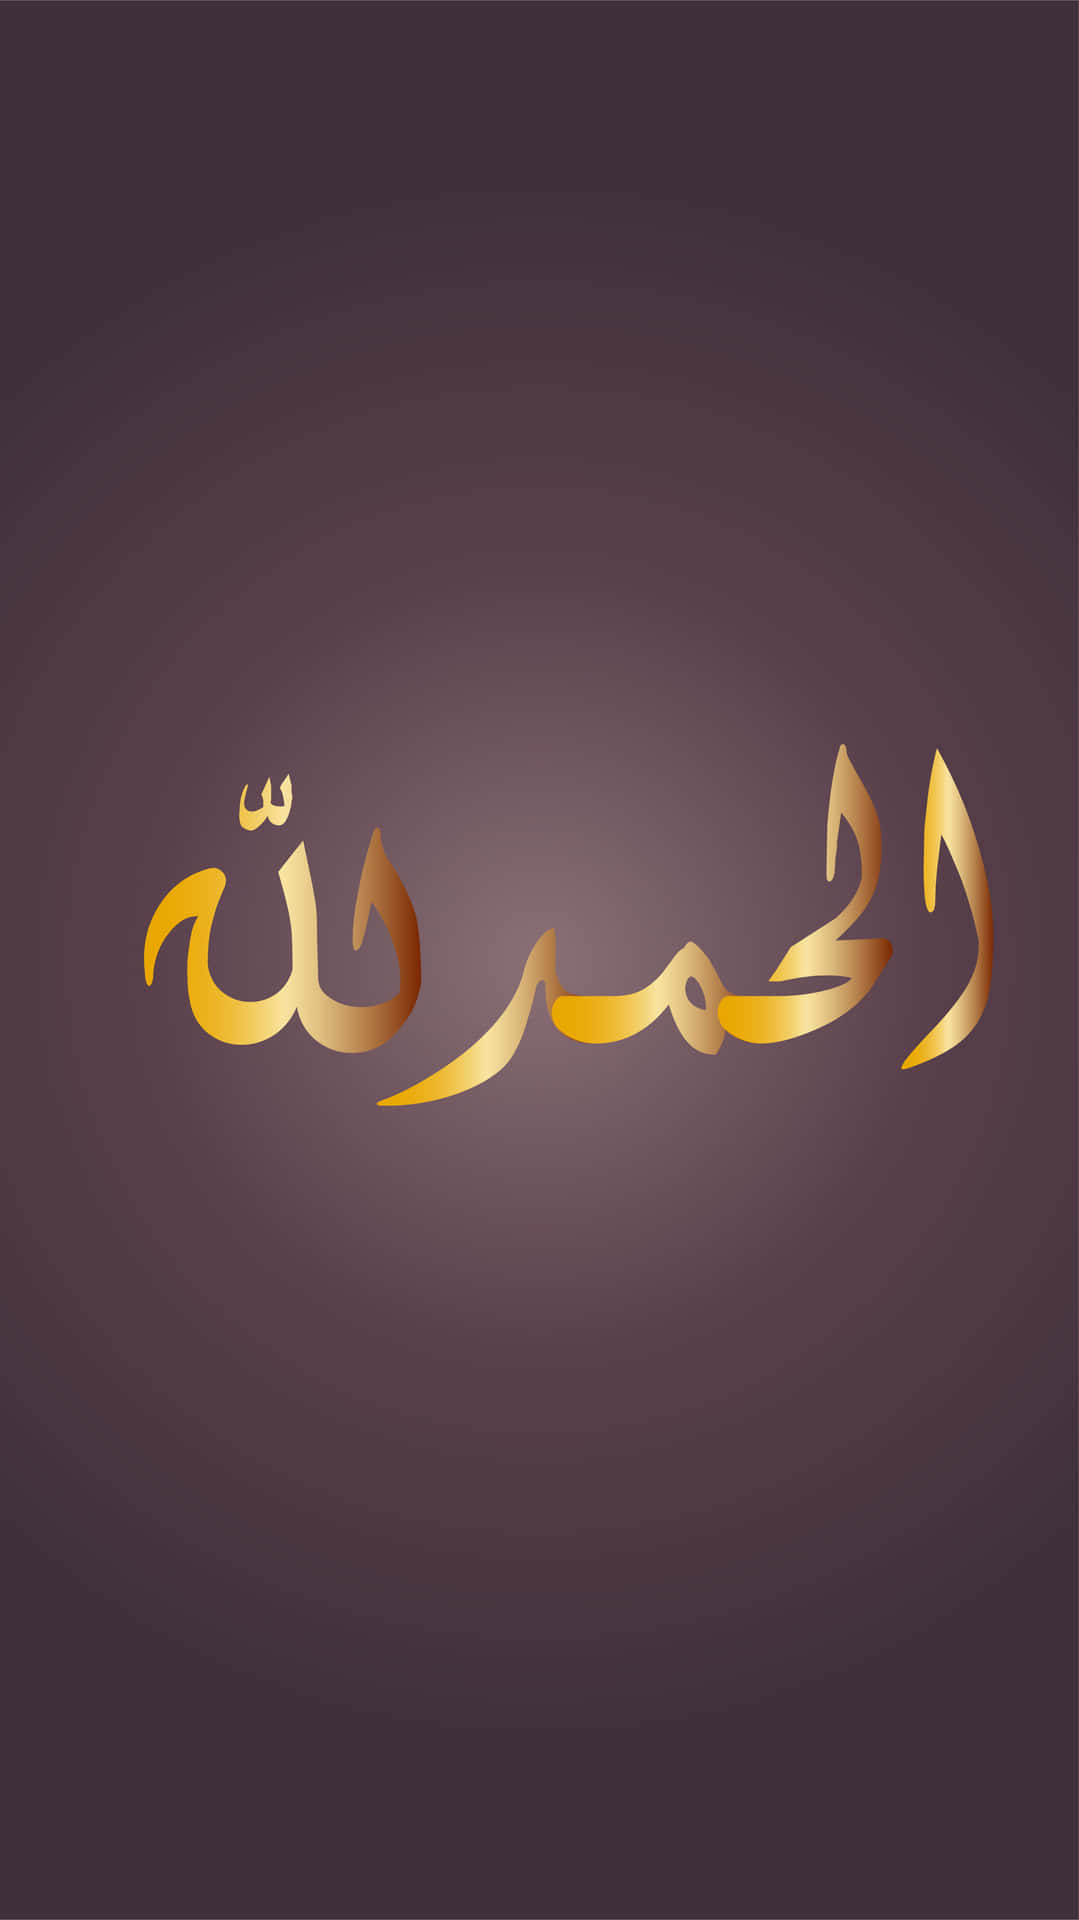 Fundocom Escrita Árabe Tradicional.